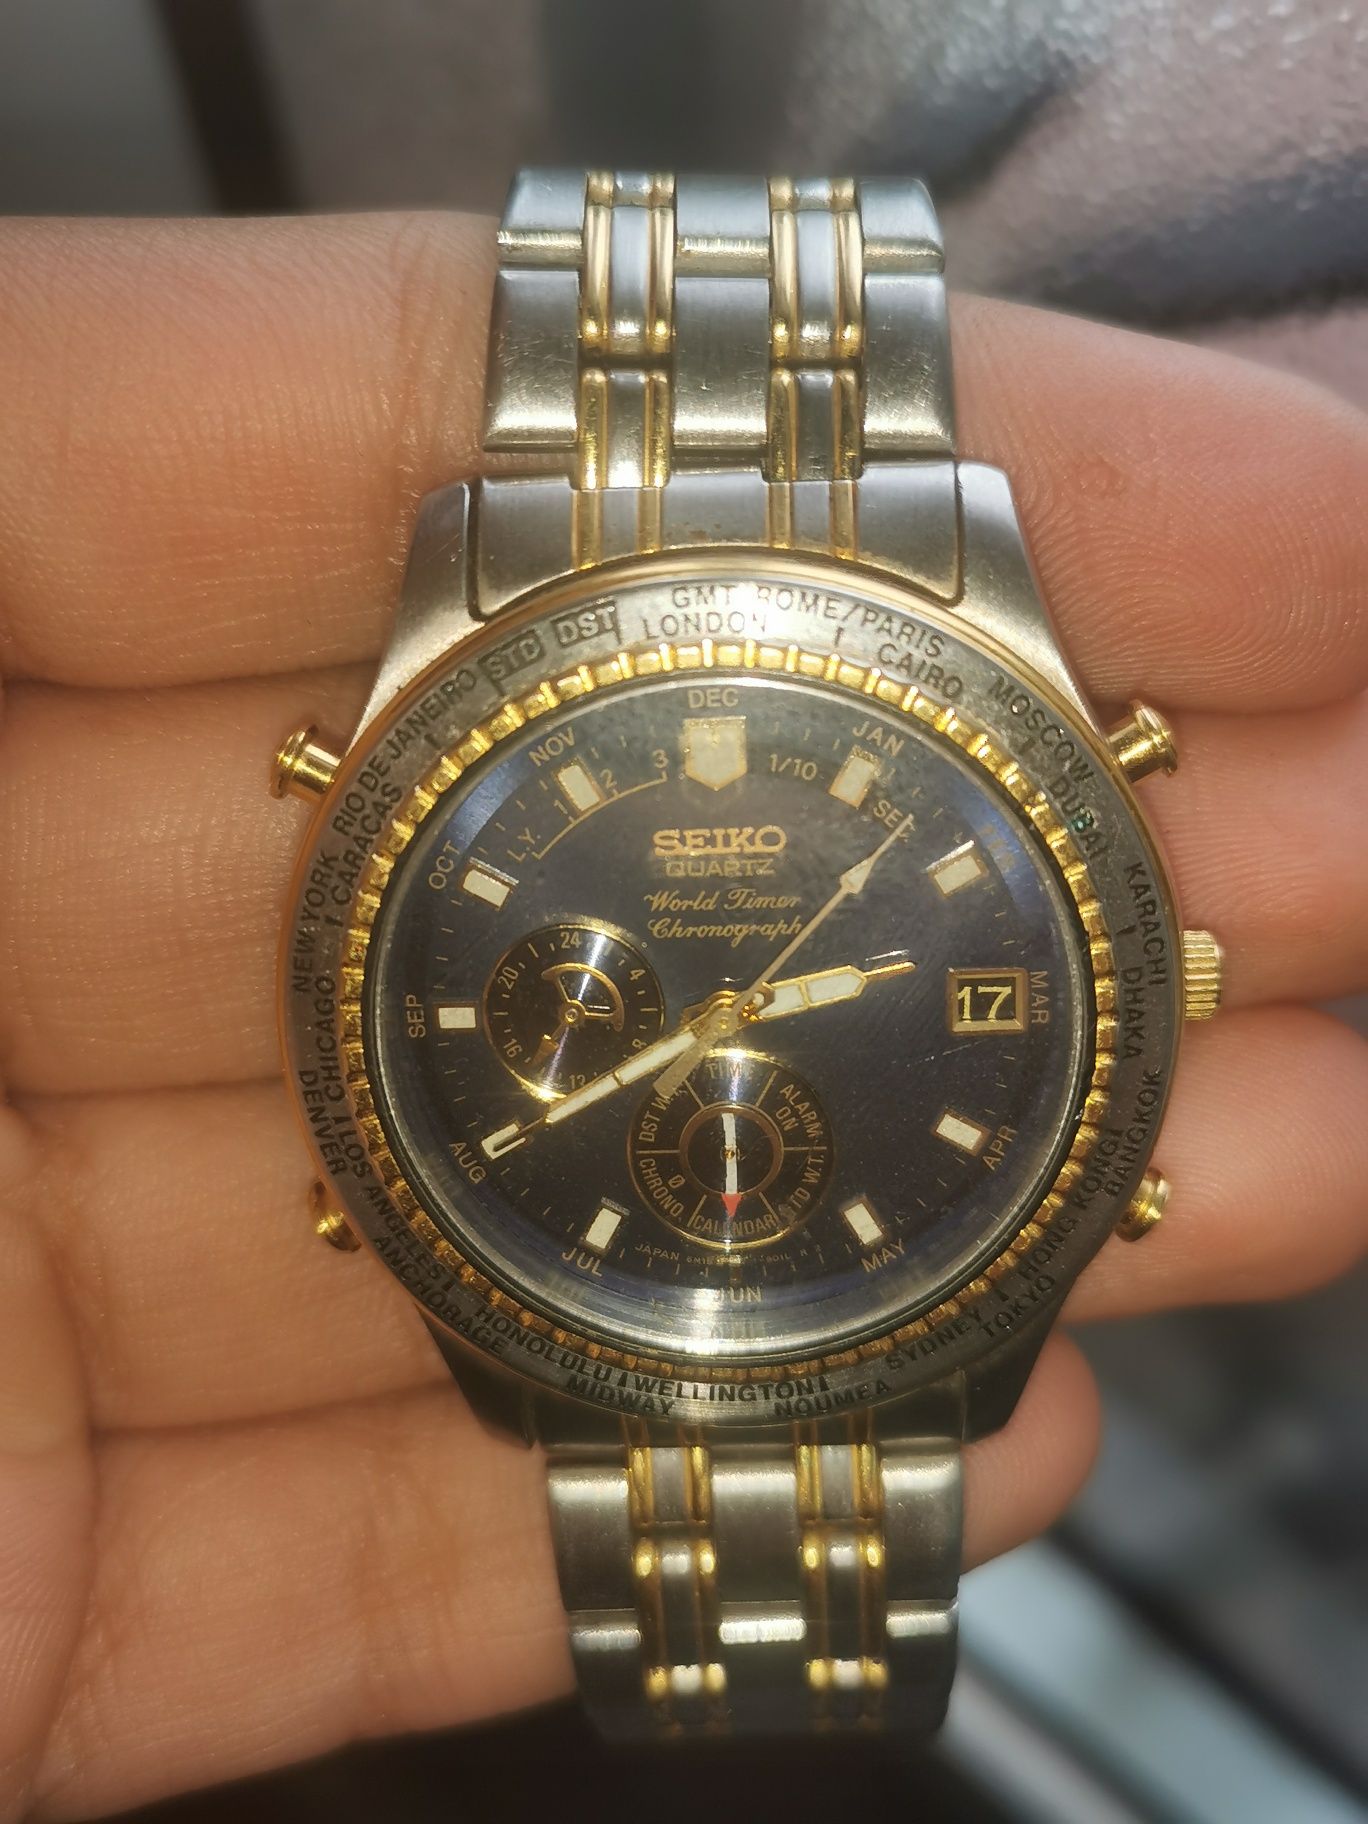 Relógio Seiko - World Timer Chronograaf